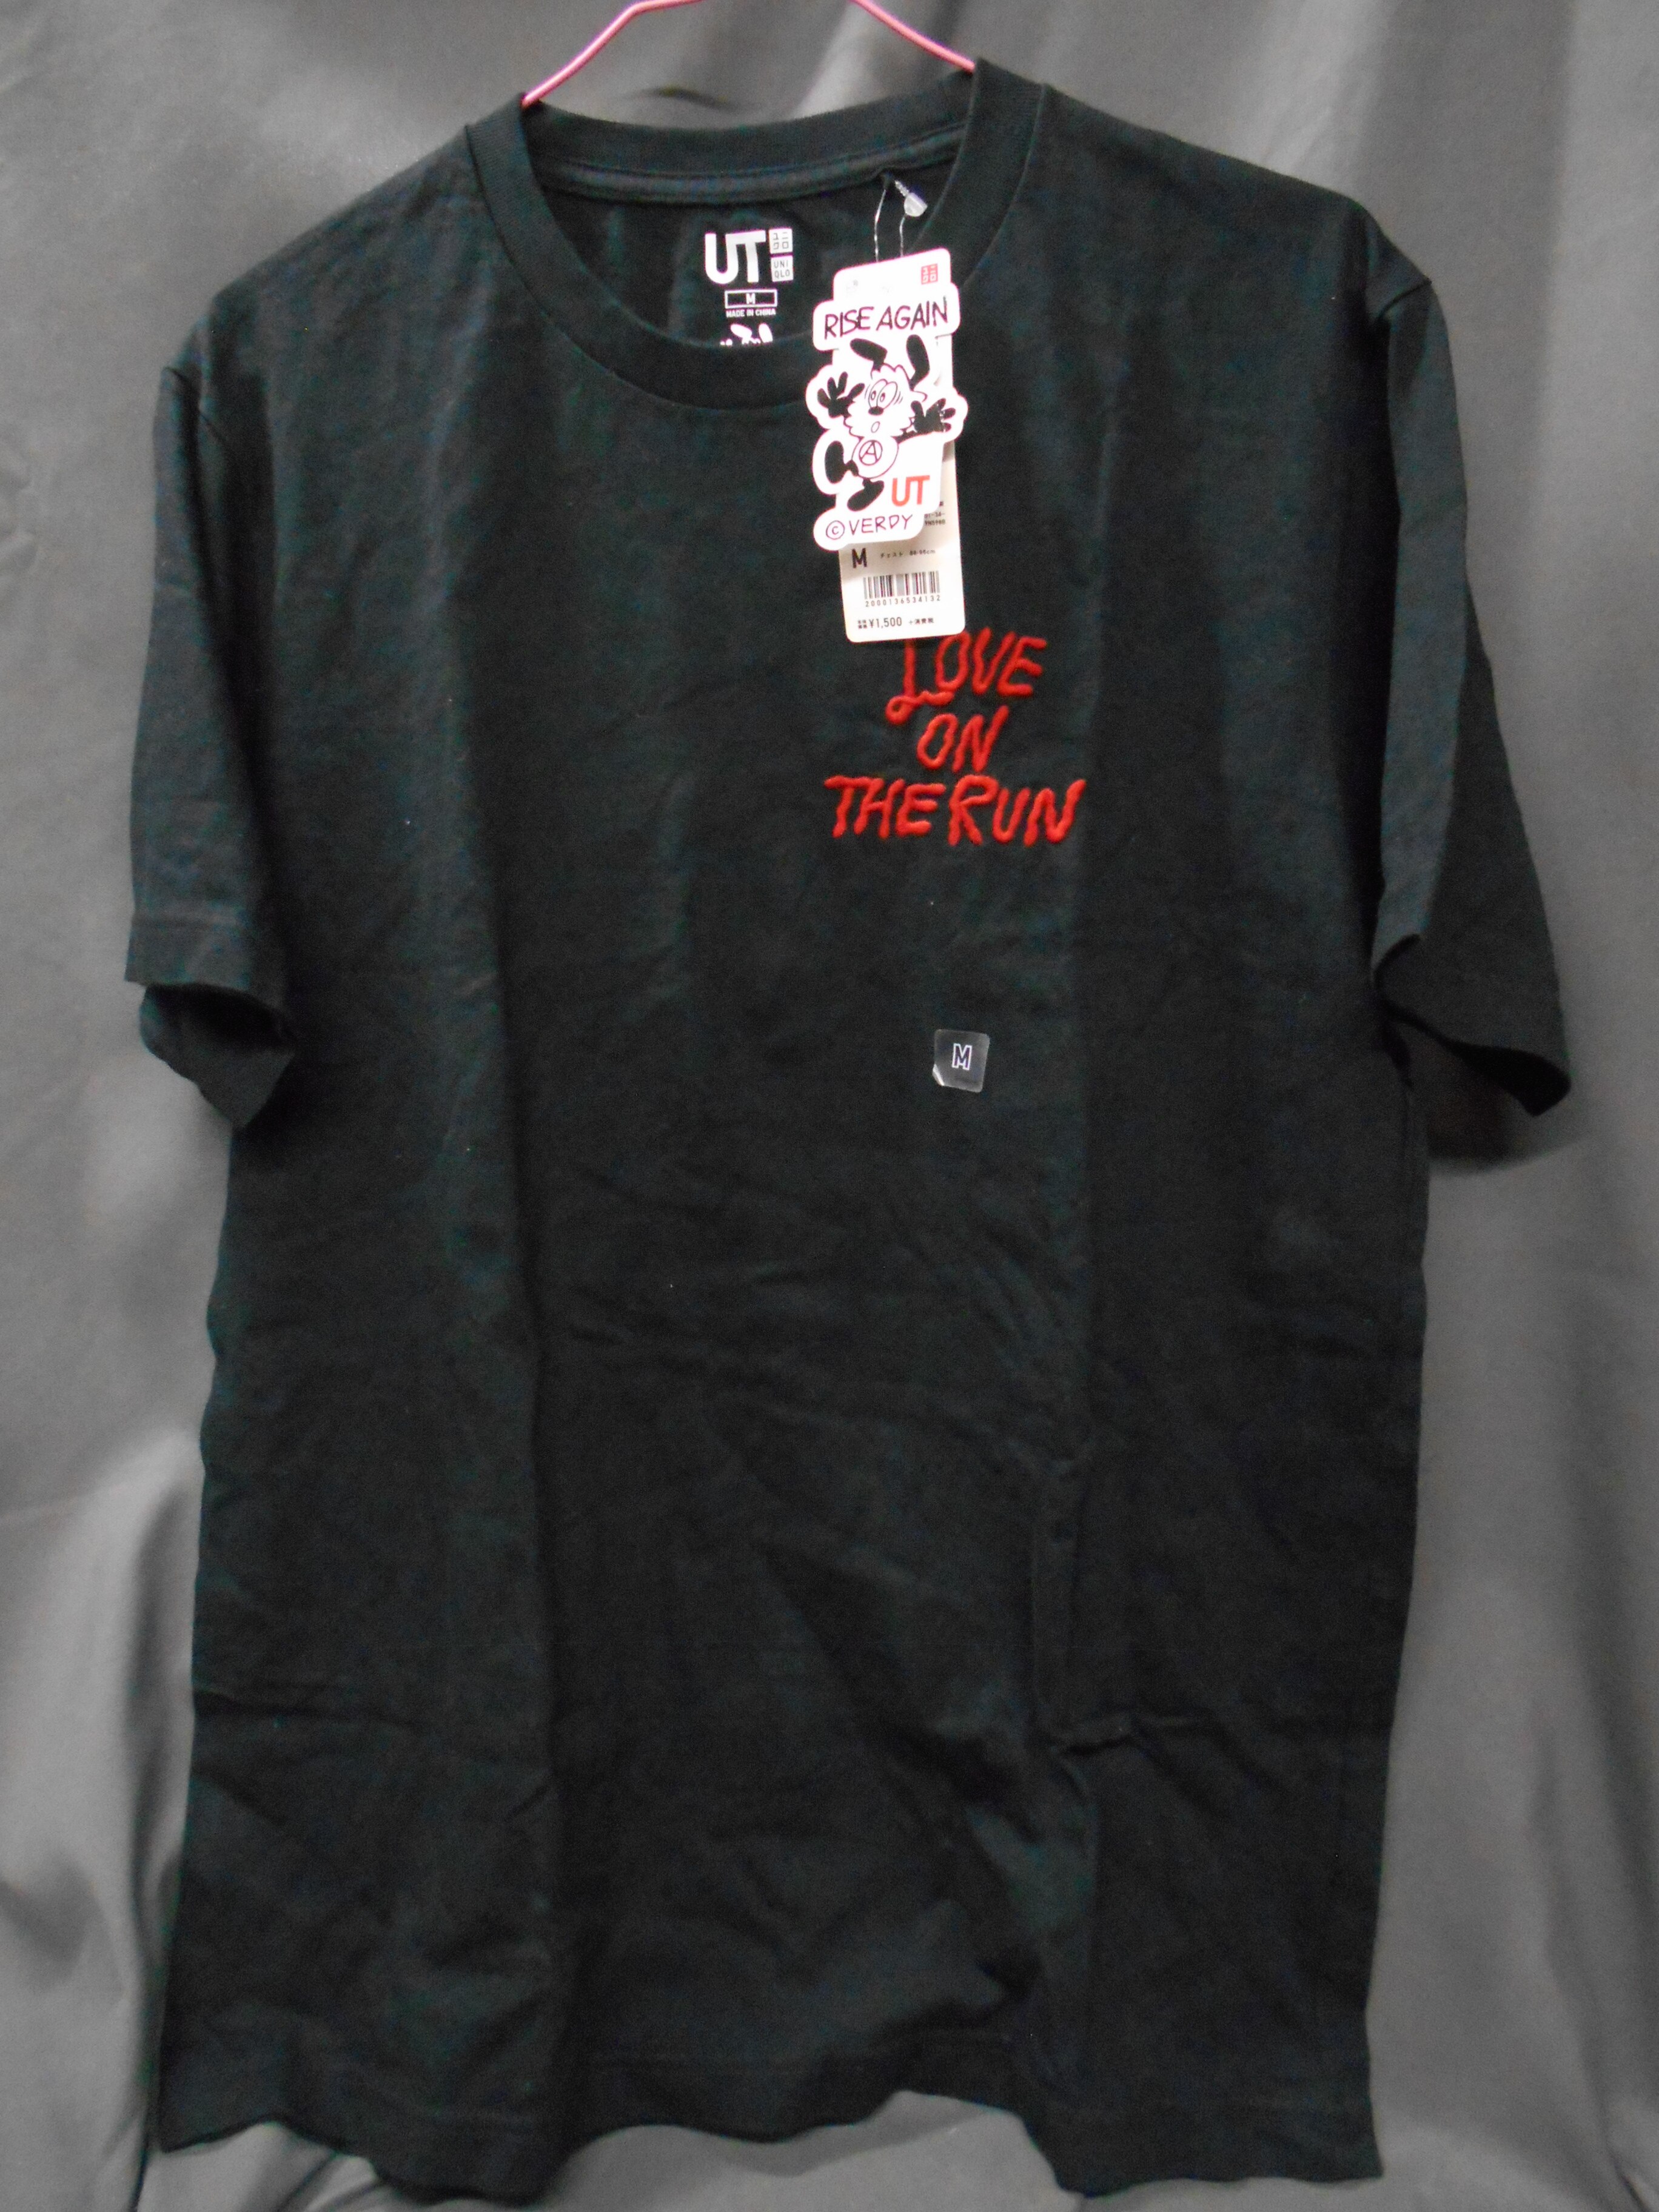 ユニクロ Tシャツ R.A.BY VERDY UT 09 Black 赤文字 半袖 Mサイズ